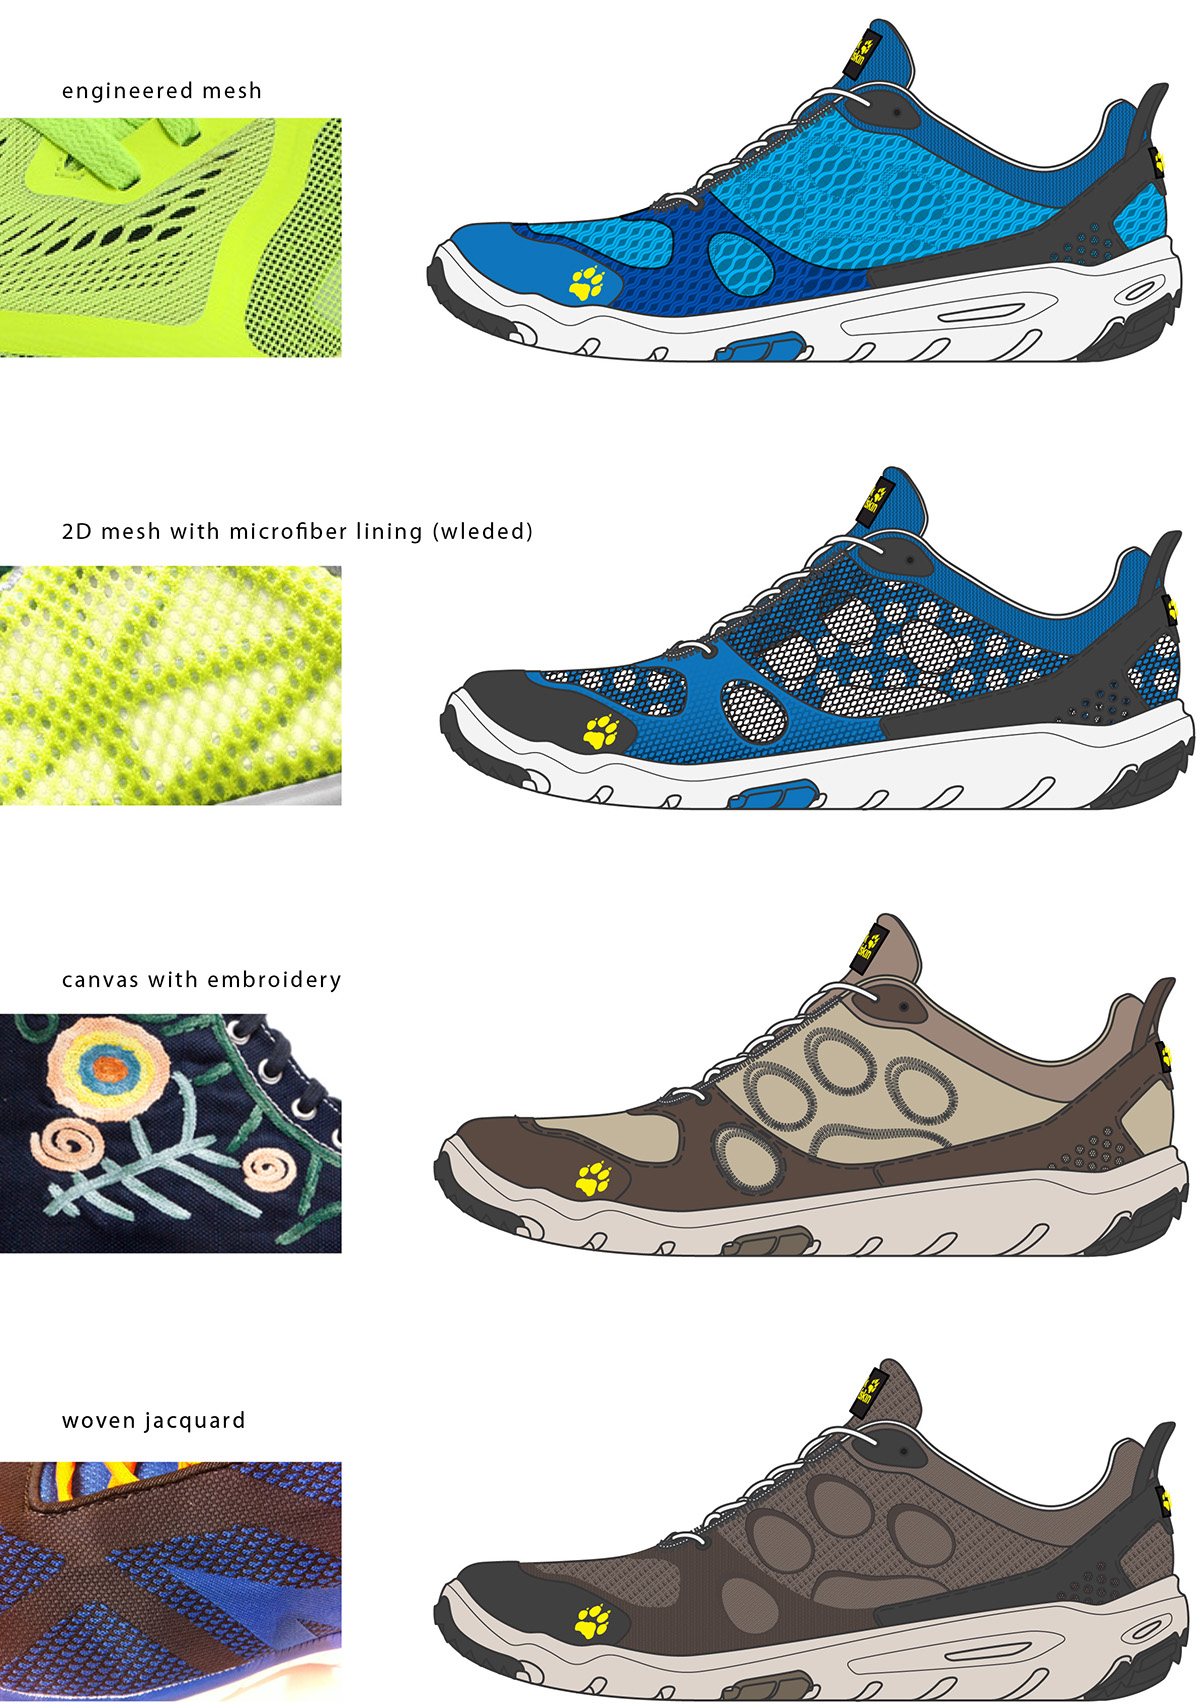 footwear design language